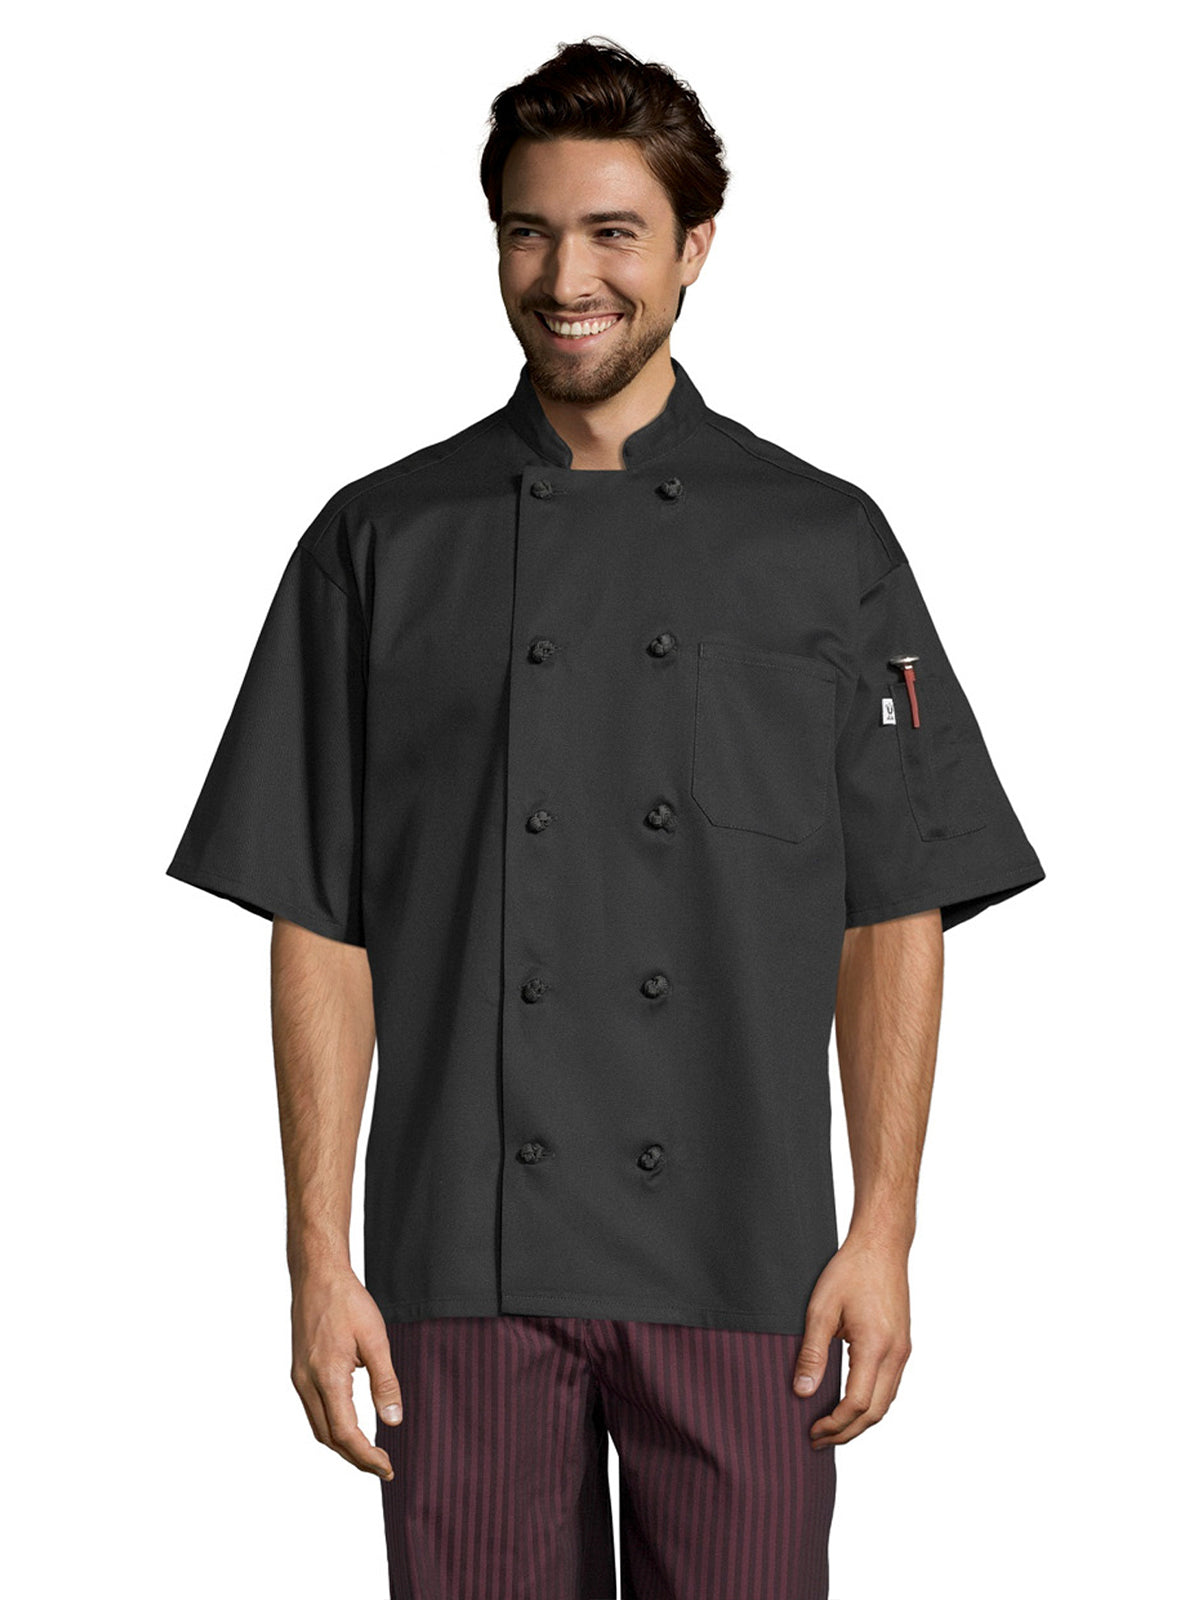 Unisex Chef Coat - 0484 - Black